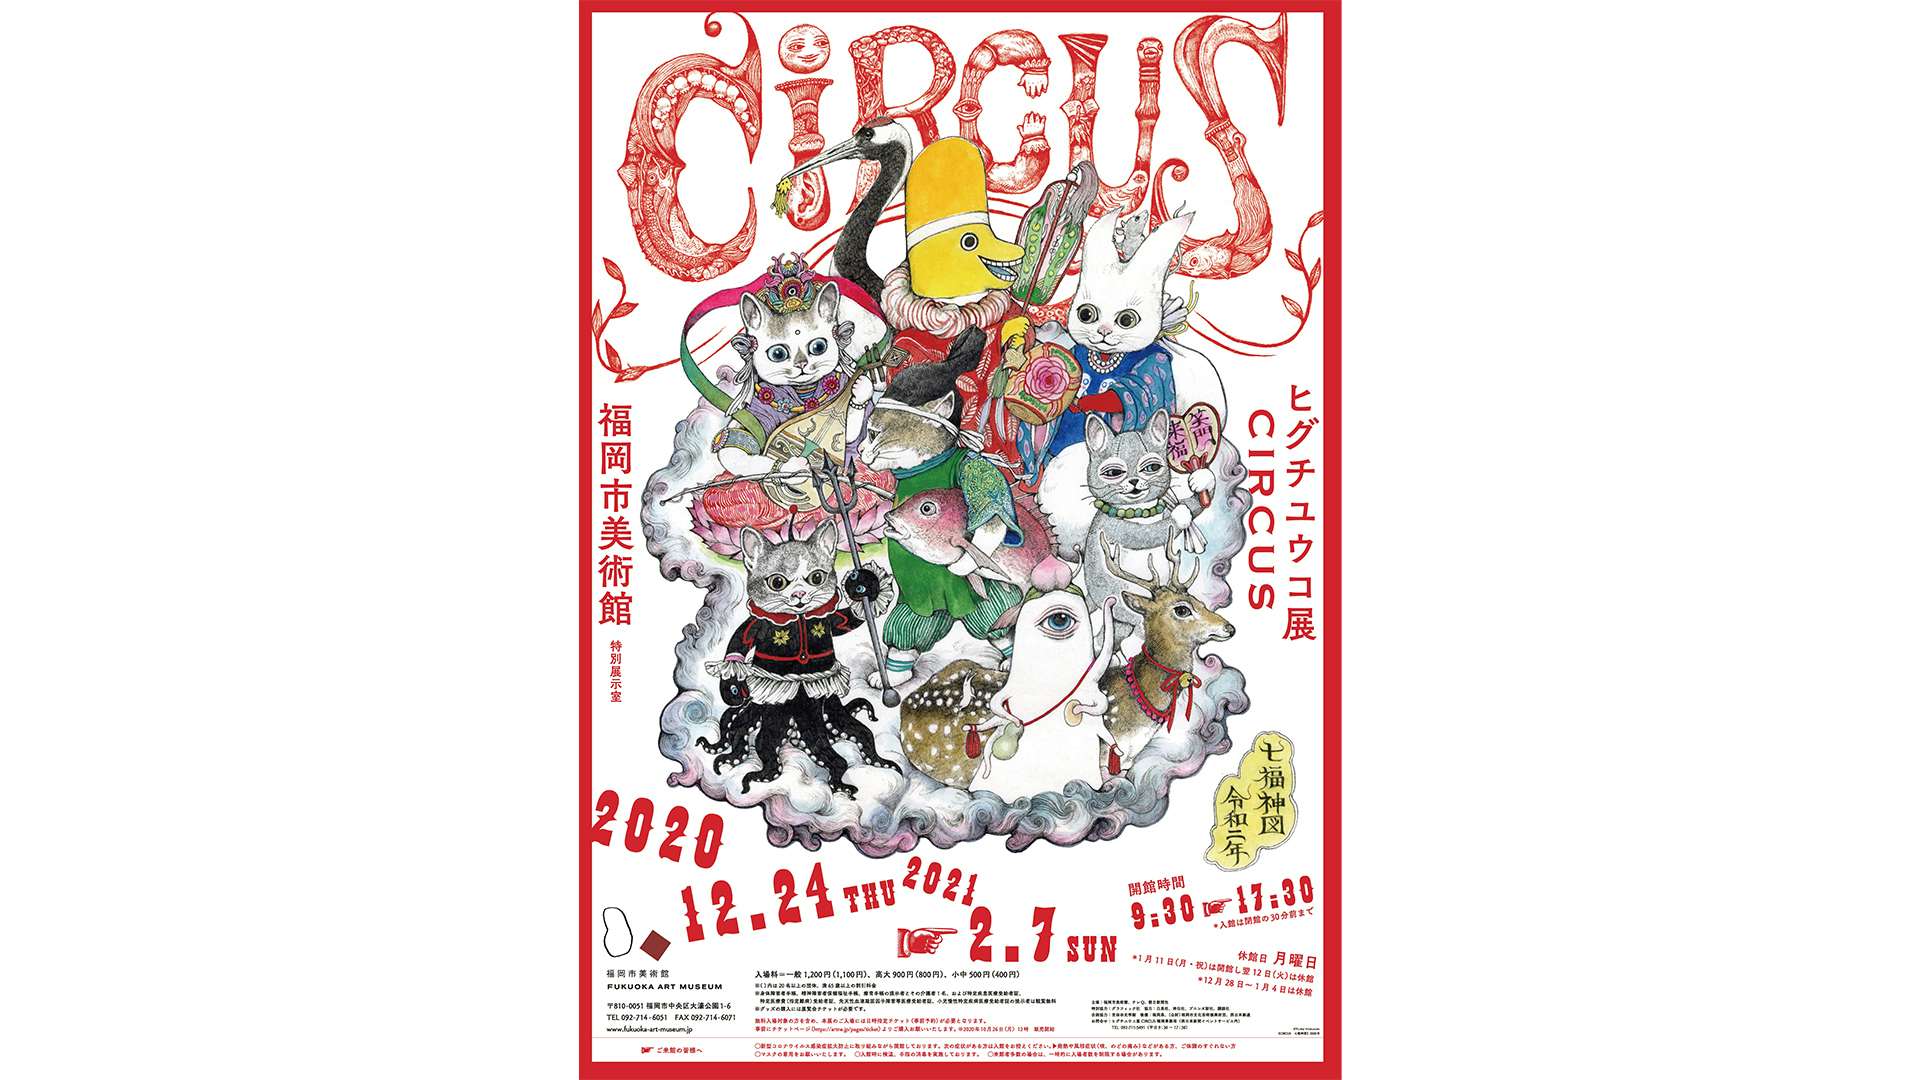 画家・絵本作家、ヒグチユウコの大規模個展。「CIRCUS」が福岡市美術館